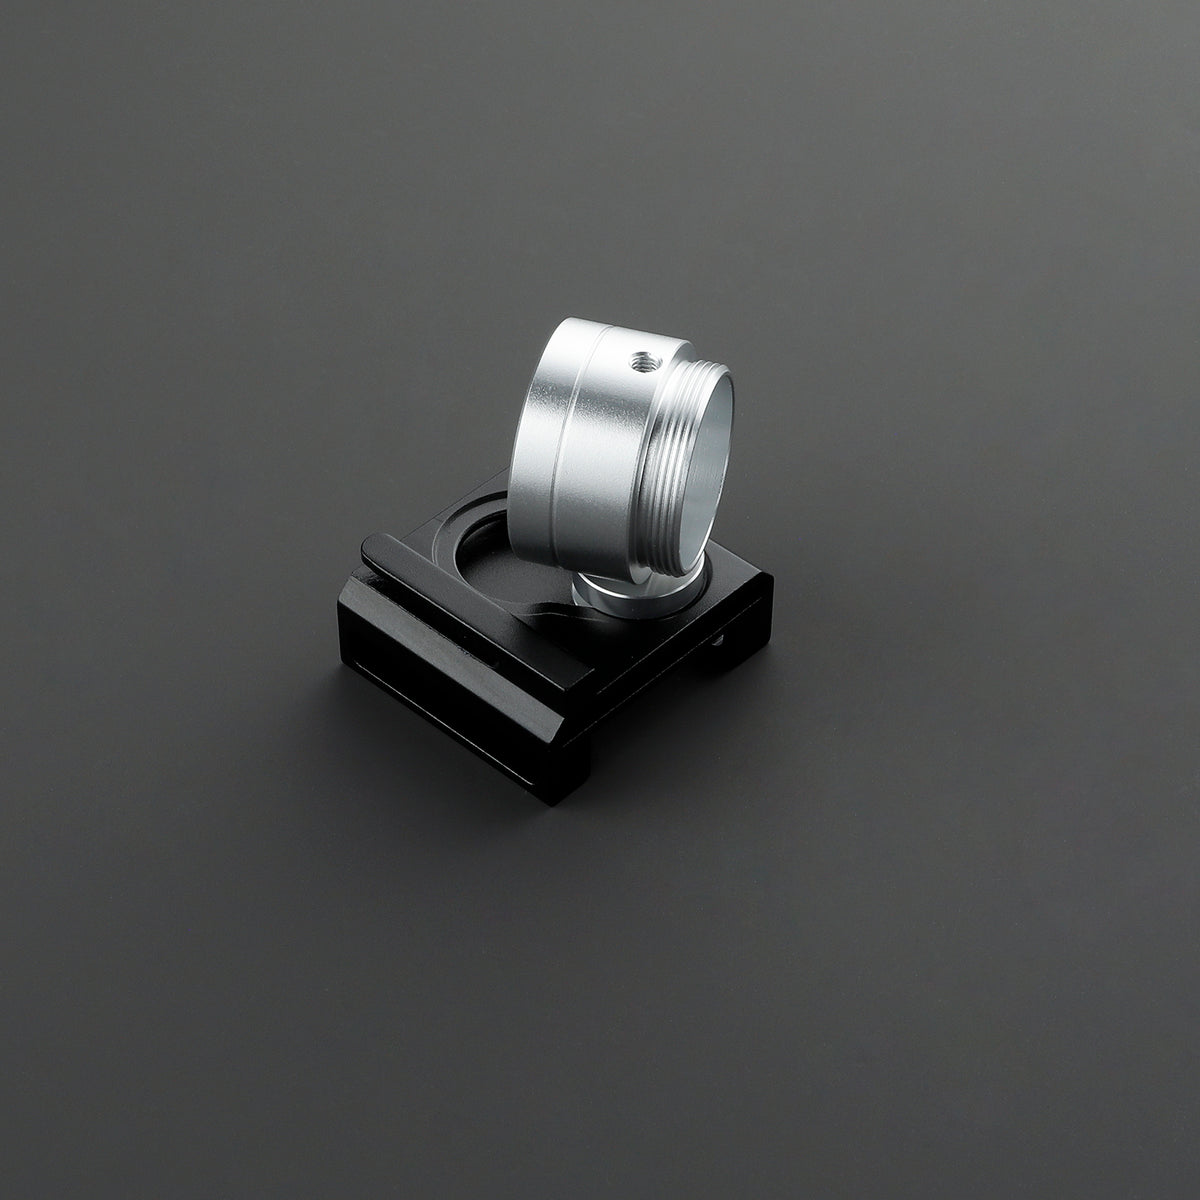 SaberCustom belt clip covertec wheel holder for lightsaber